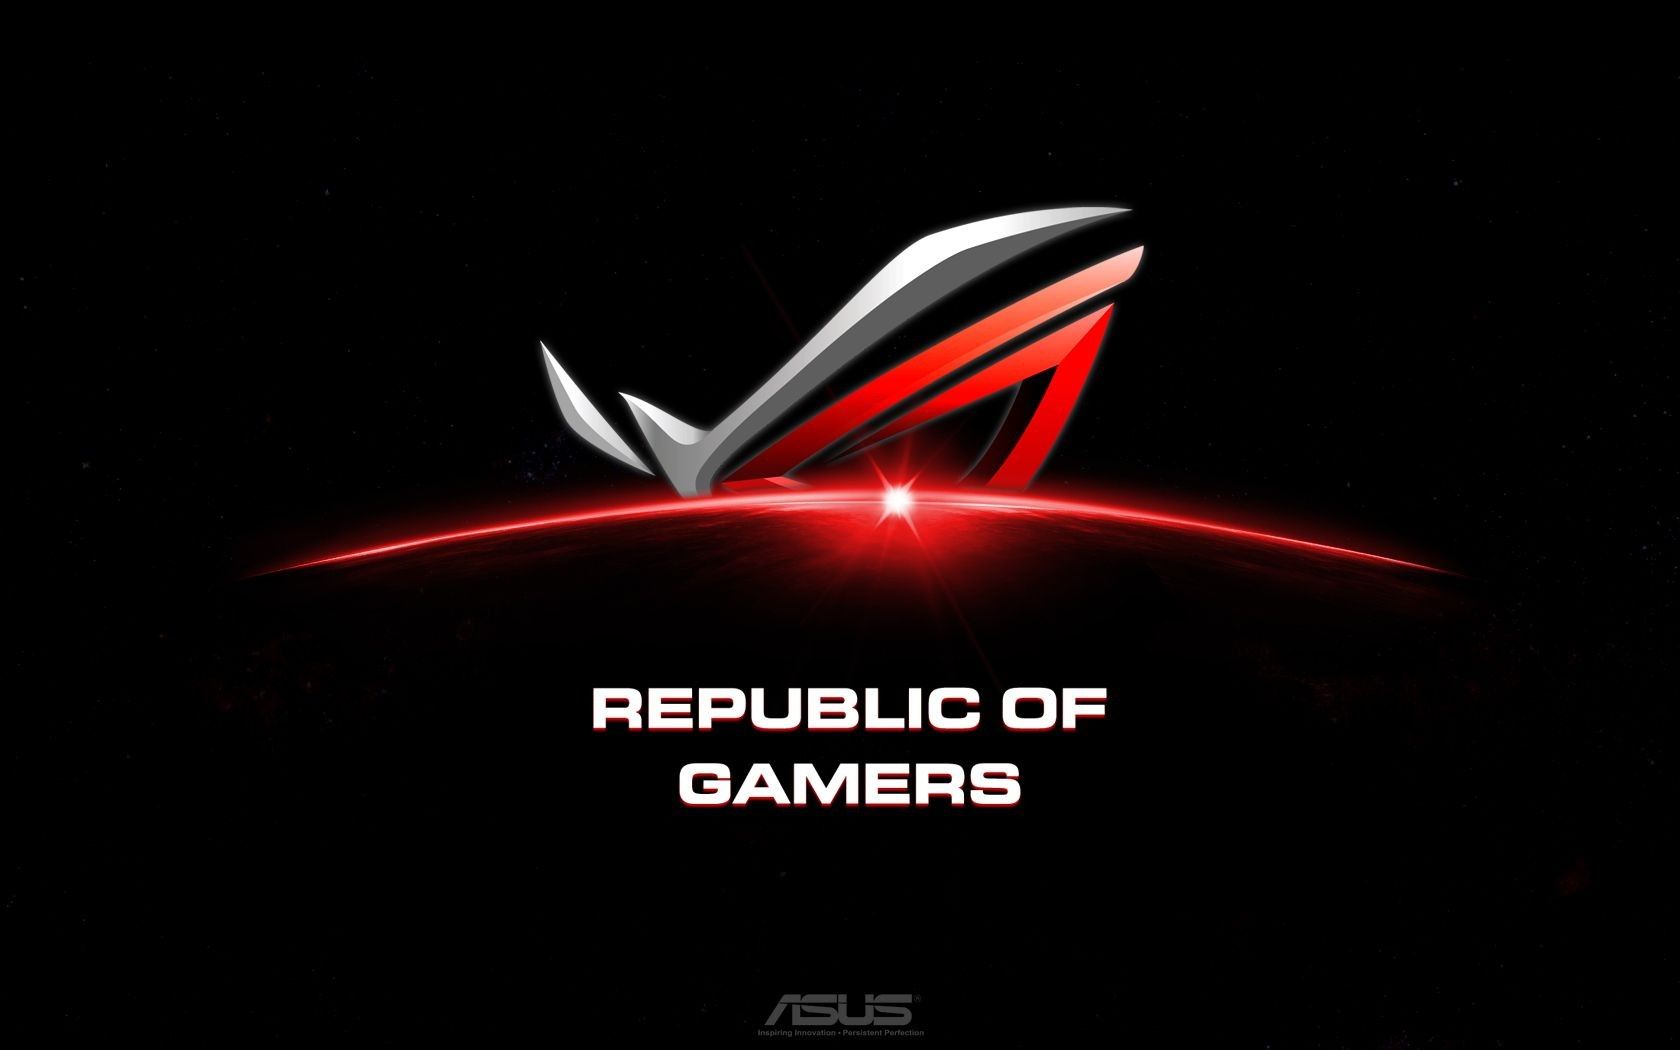 Fondos de pantalla: logo, diseño gráfico, Republic of Gamers, marca, jugadores